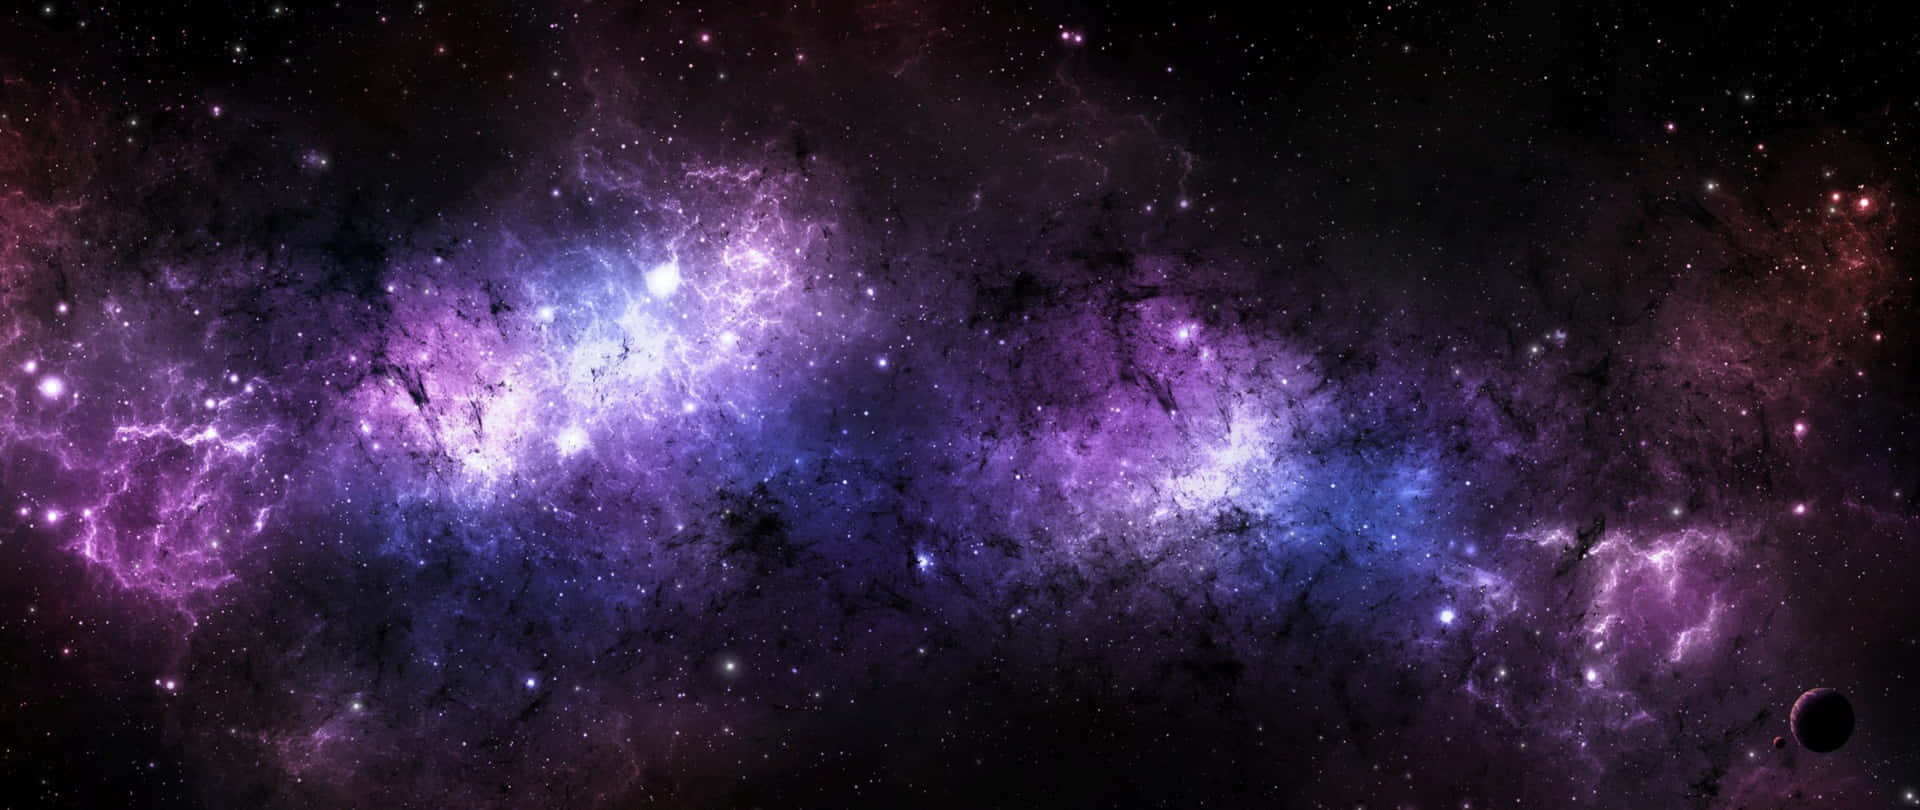 Et forbløffende kig ind i et fantastisk sort og lilla galaks. Wallpaper